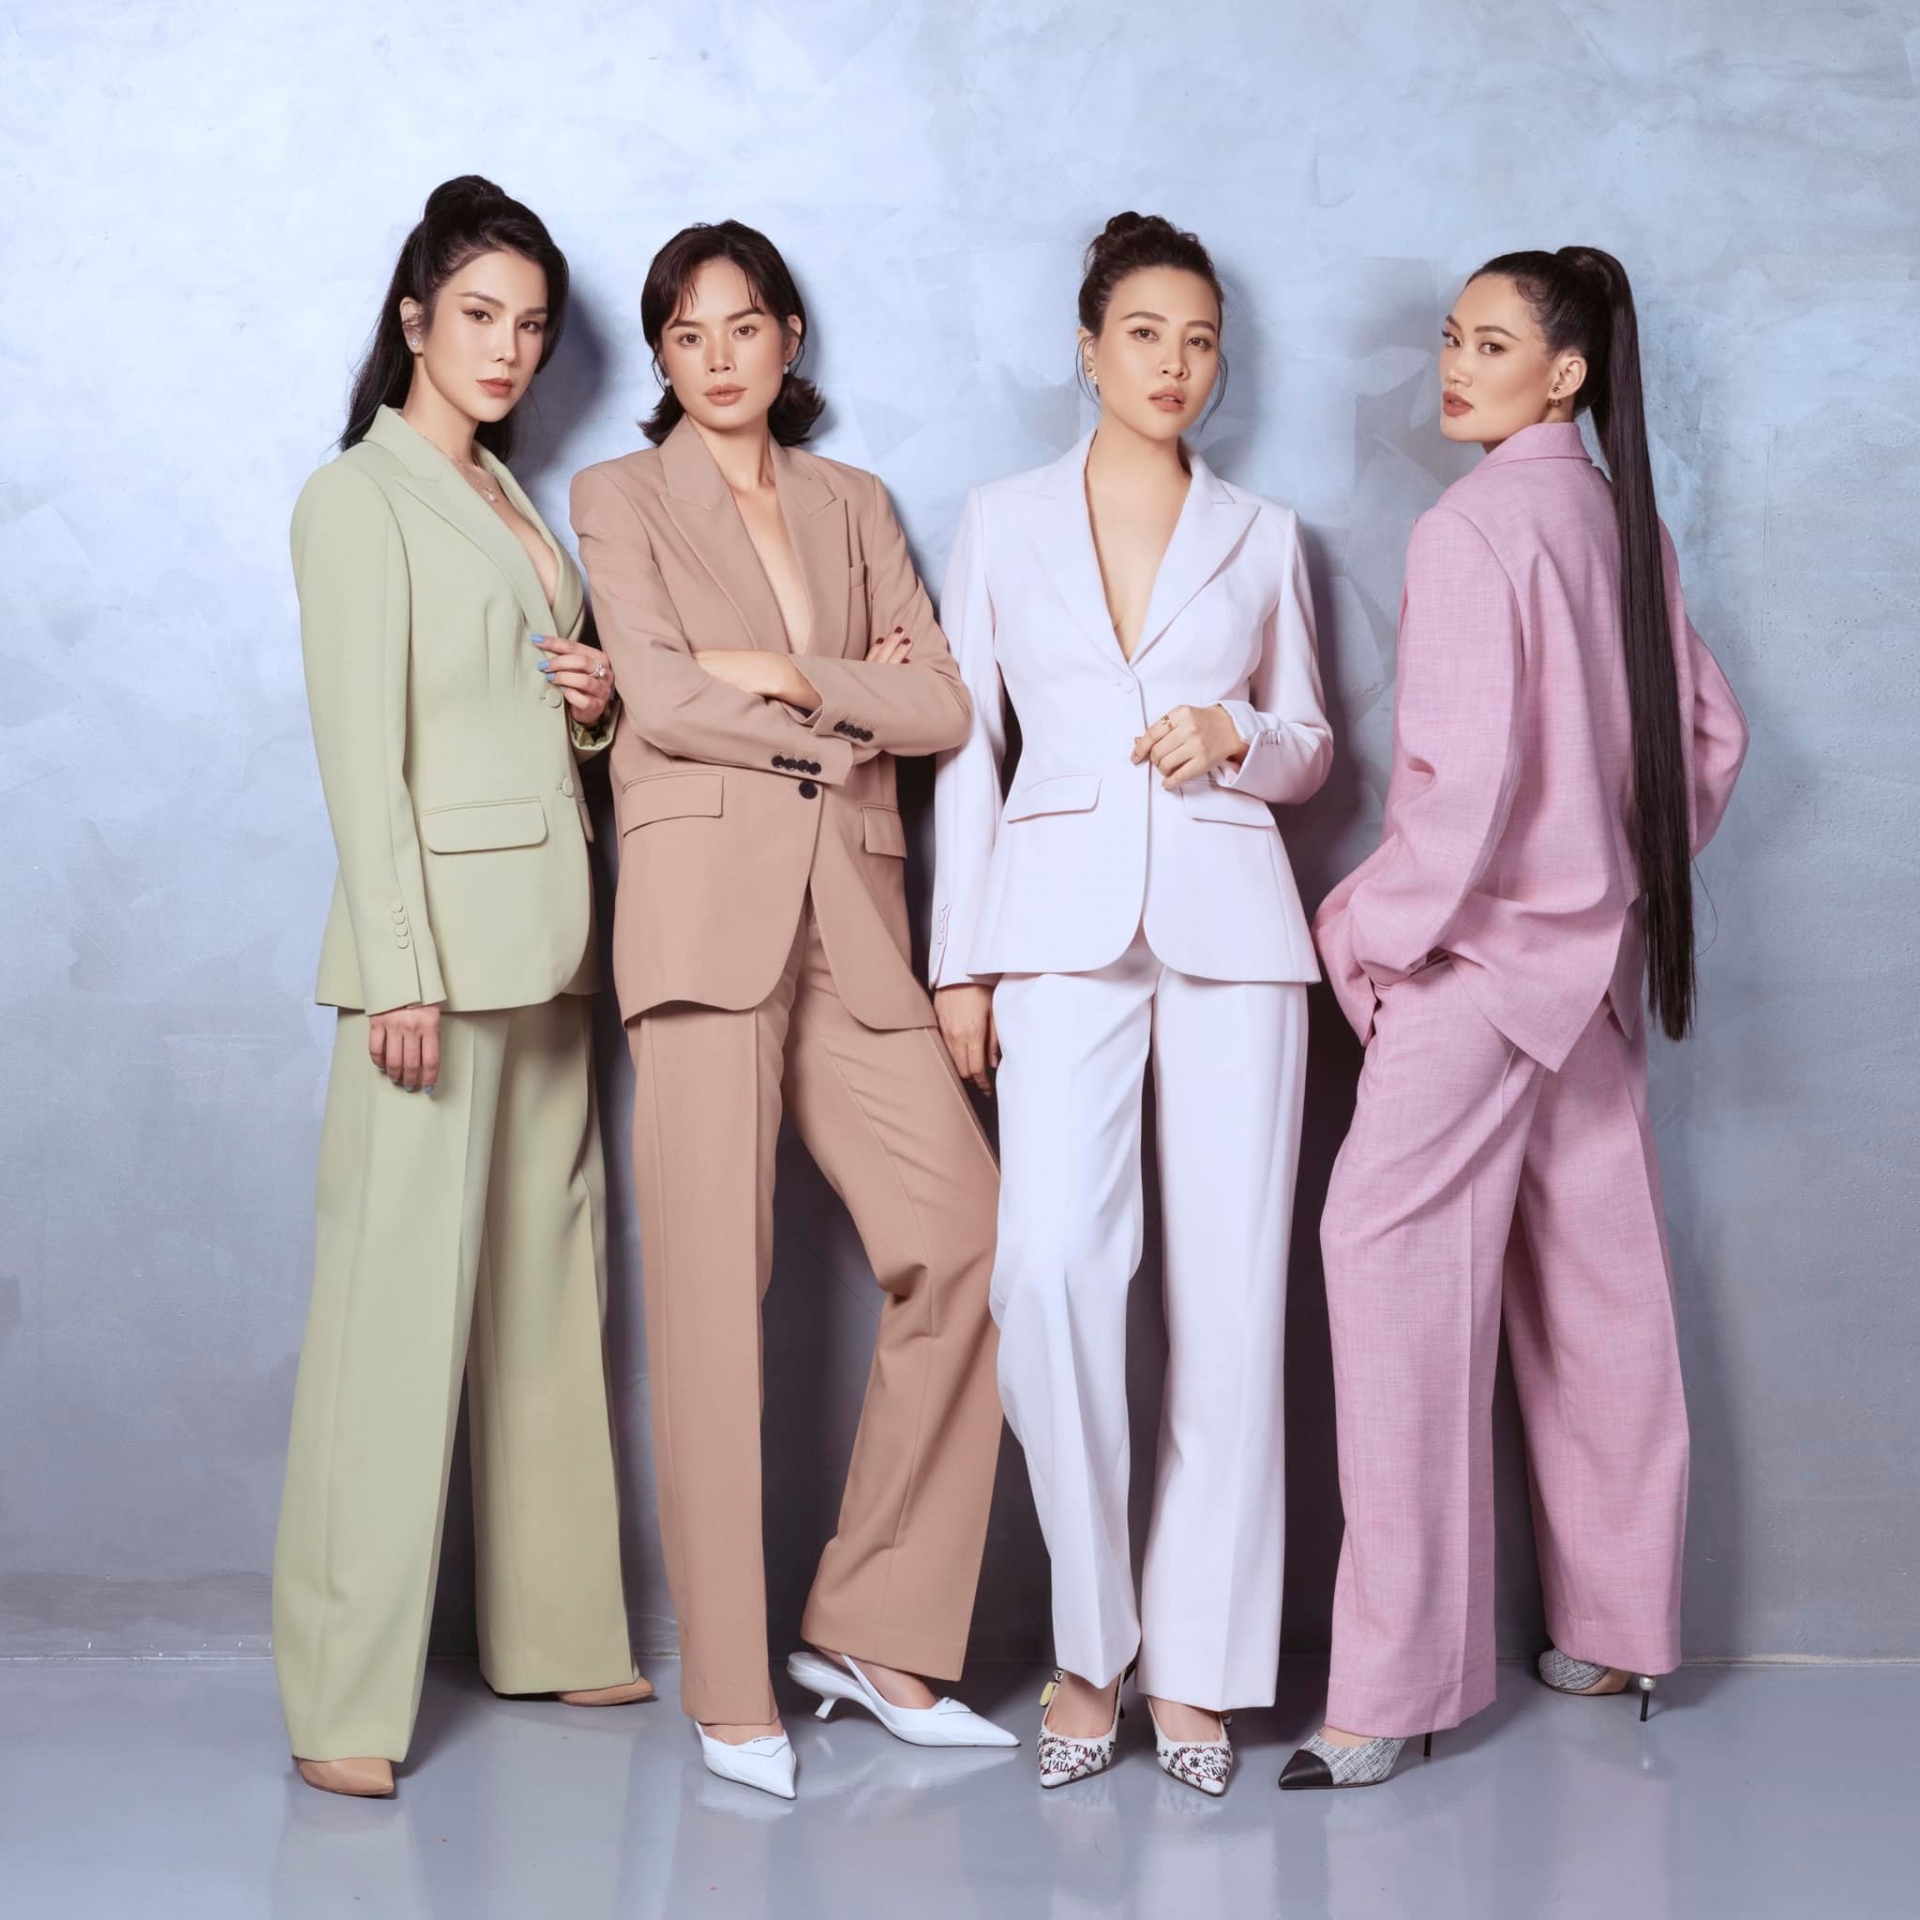 Cả 4 cô gái đều xuất thân từ cuộc thi Vietnam's Next Top Model mùa đầu tiên nên sở hữu vóc dáng cao ráo, vẻ ngoài sang chảnh.